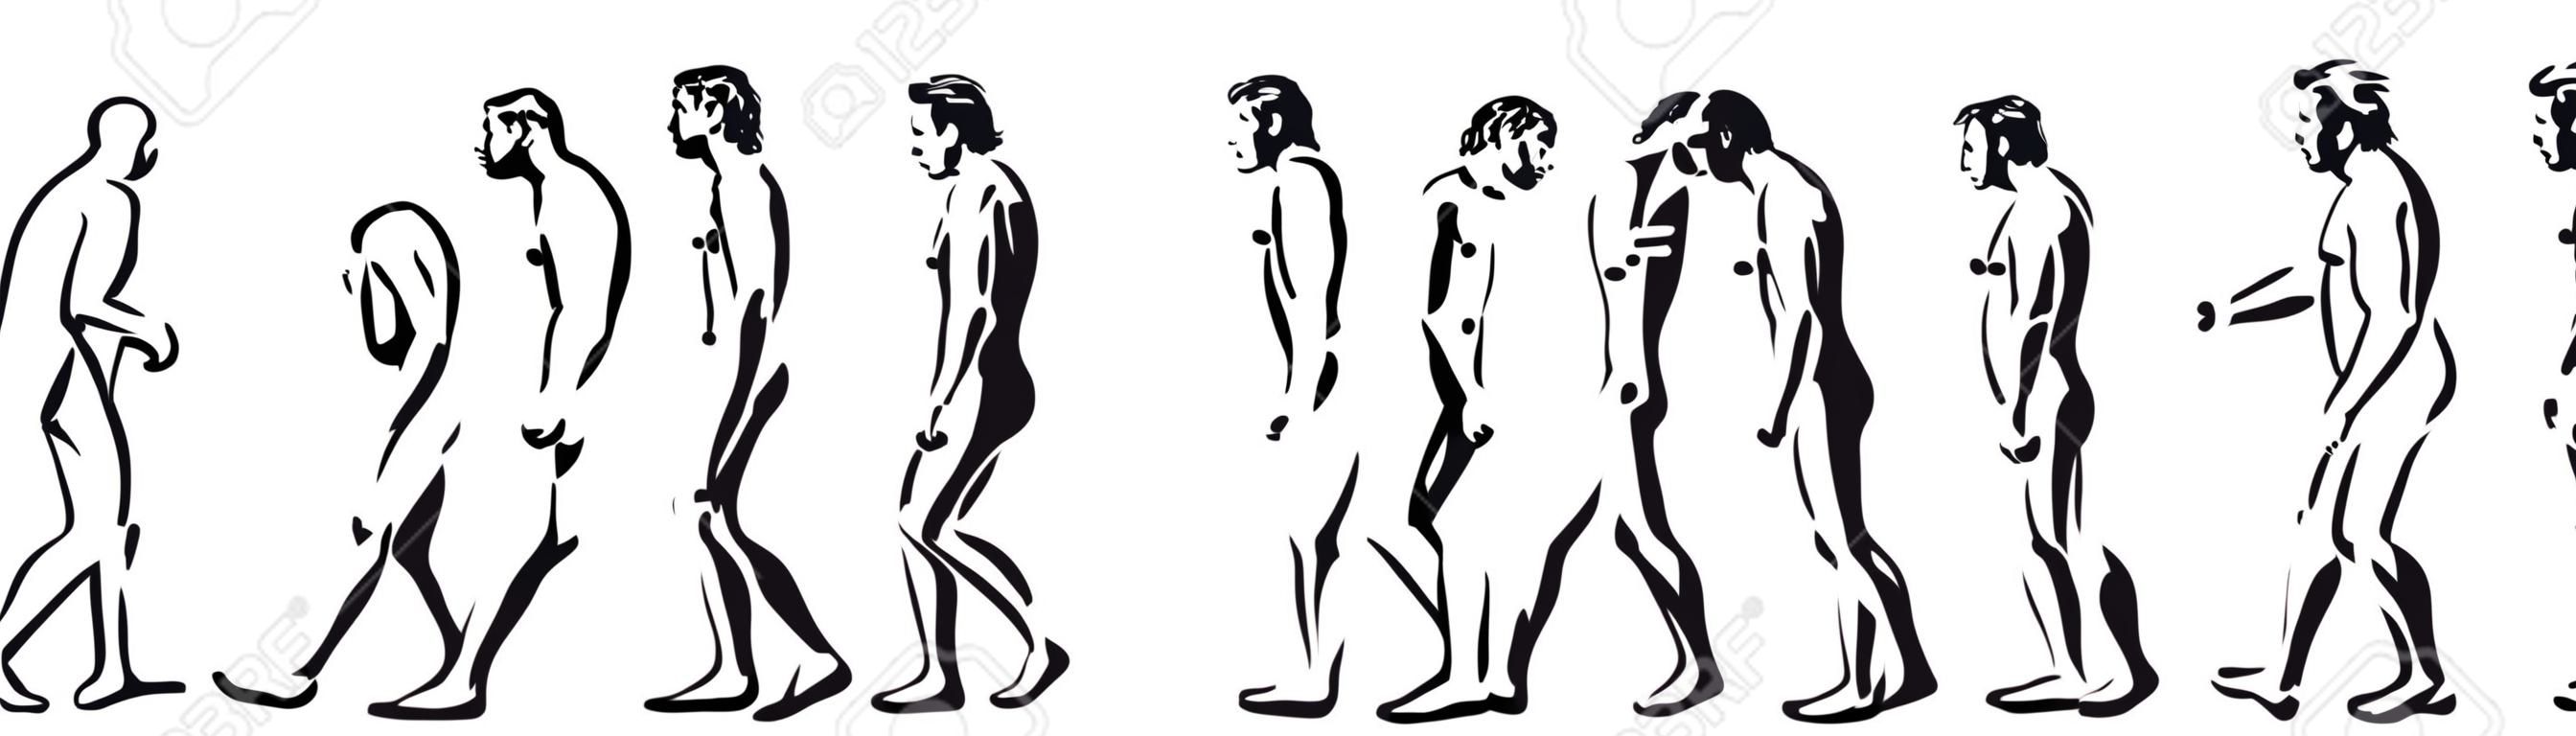 人类进化计算机时间插图